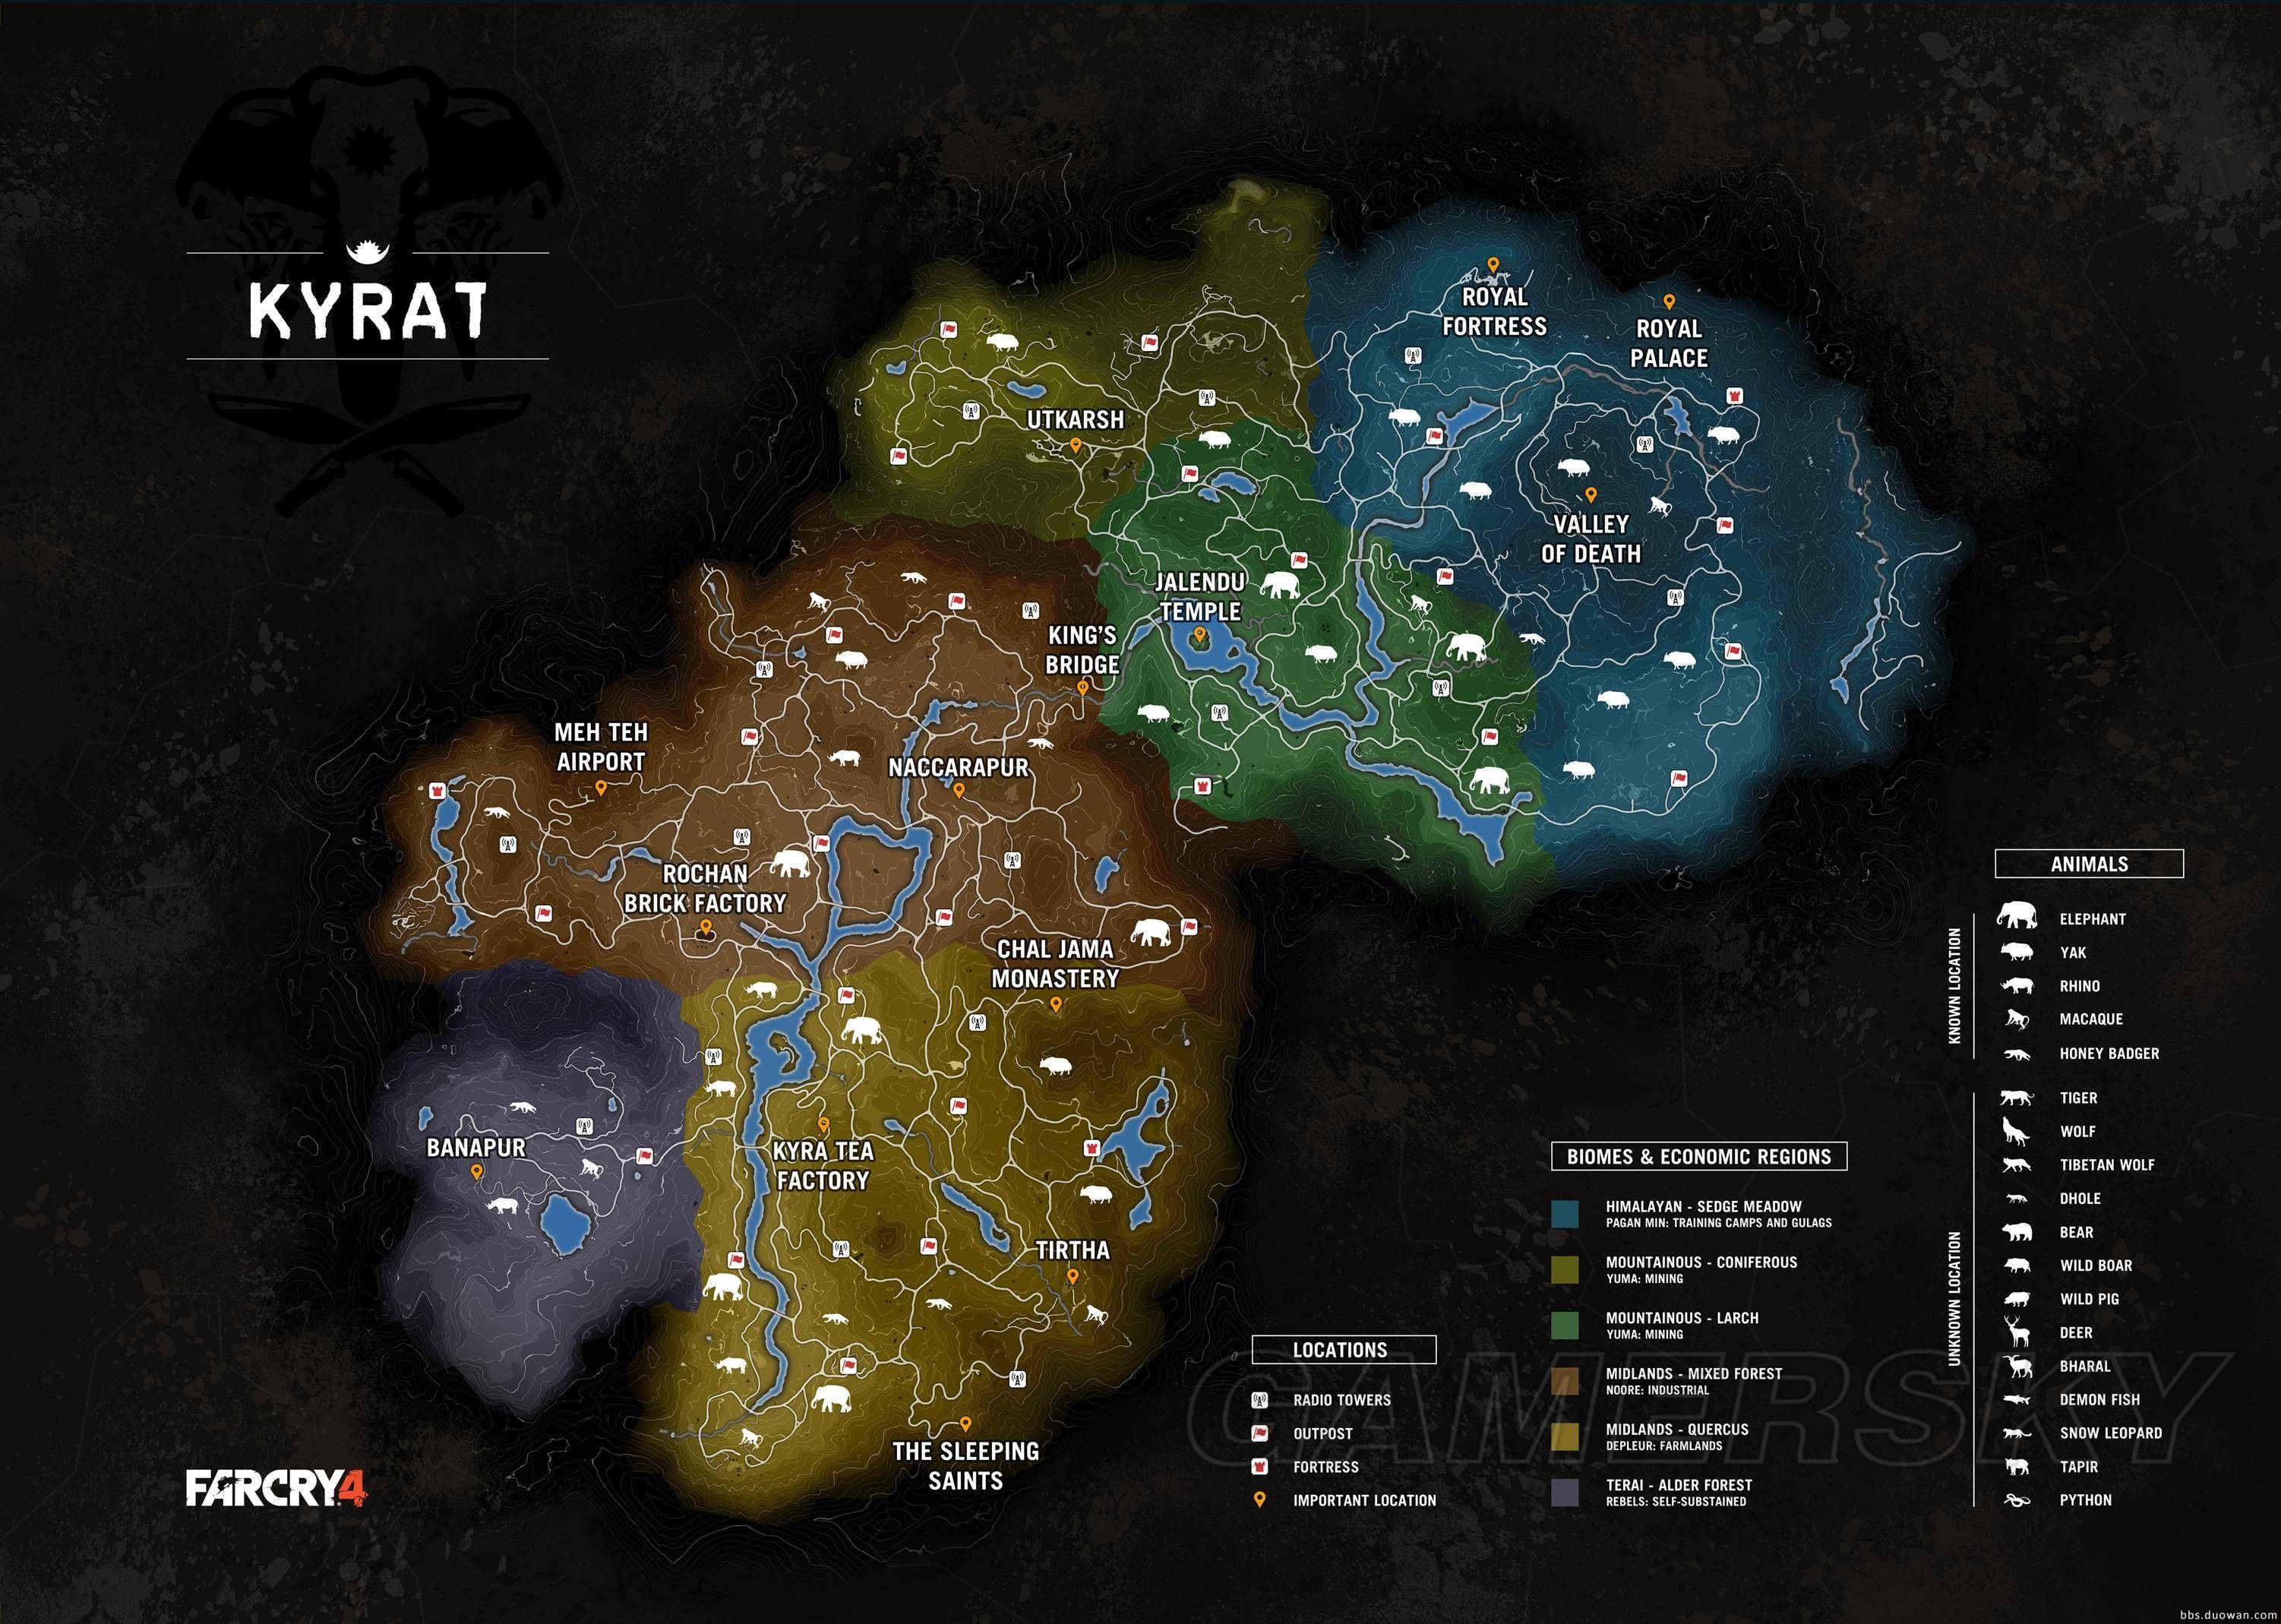 《孤岛惊魂4(far cry 4)》完整大地图泄露-ps3讨论区-多玩游戏论坛图片